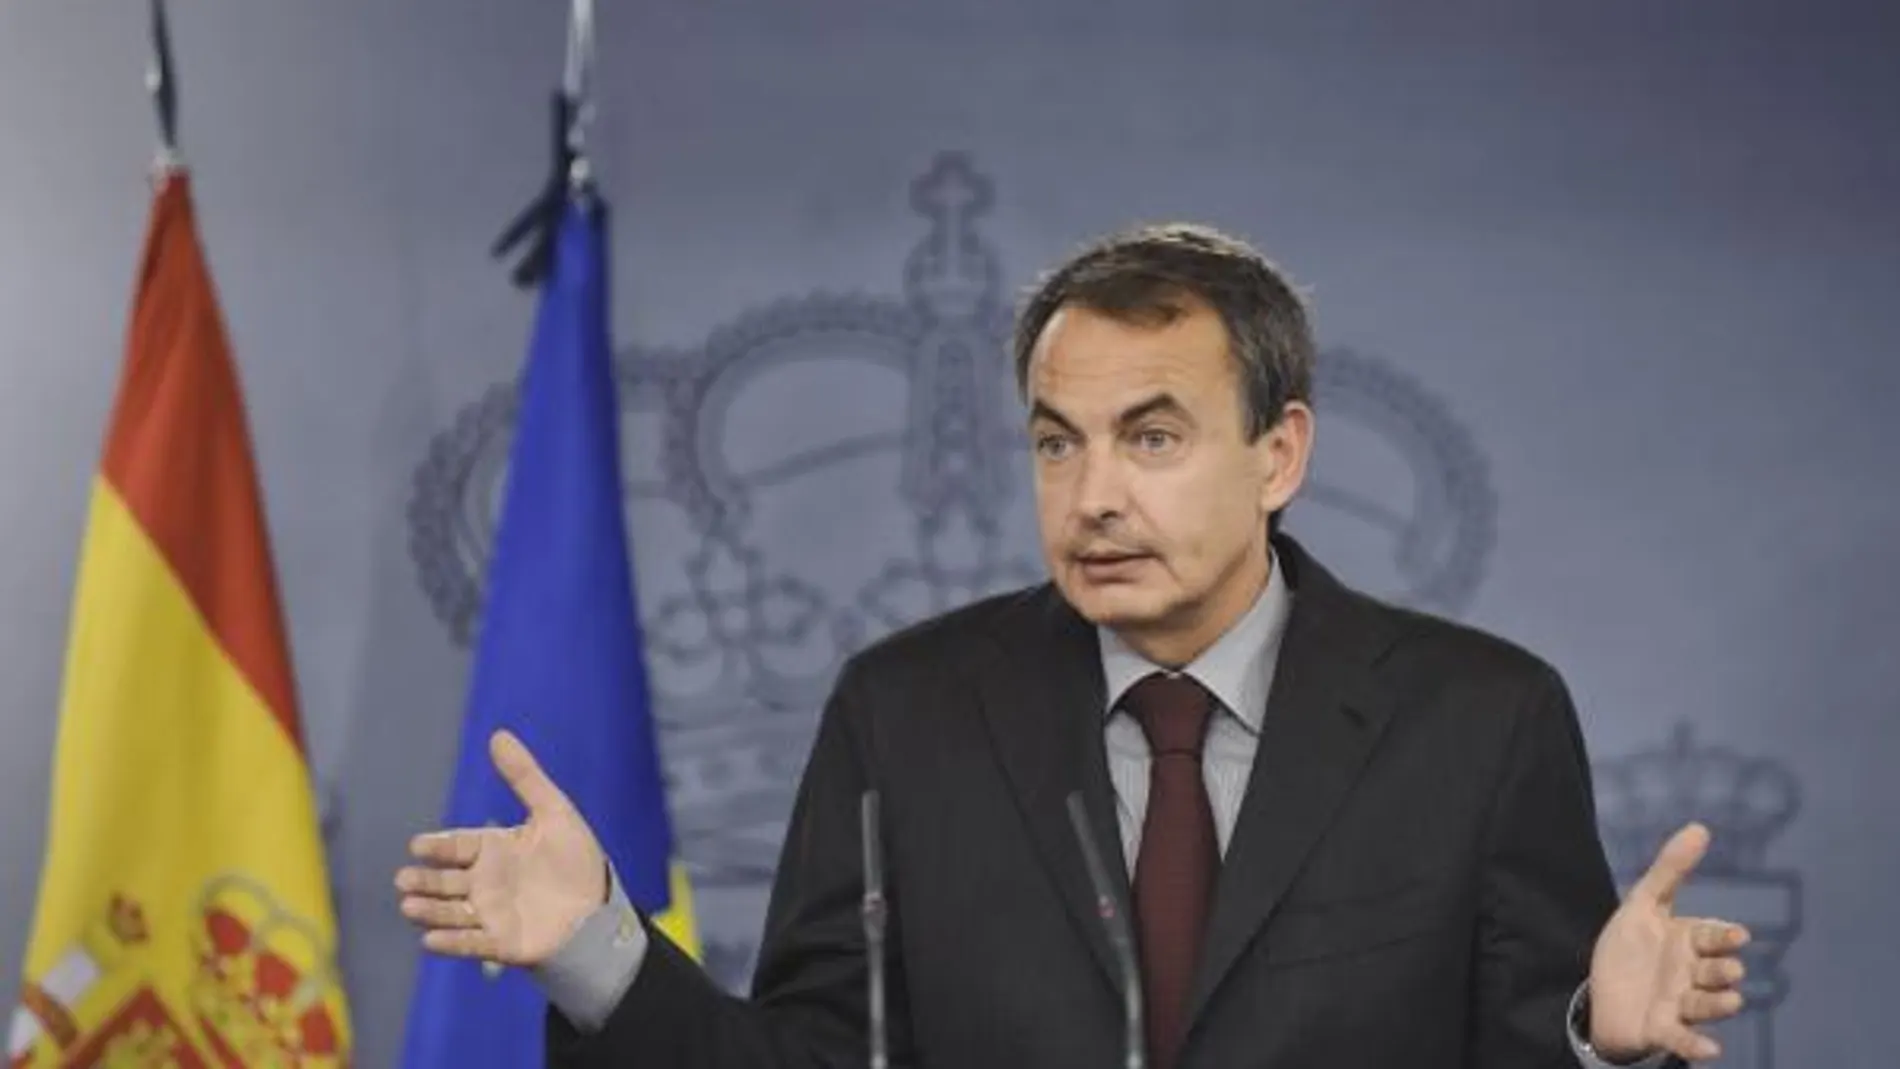 El presidente del Gobierno, José Luis Rodríguez Zapatero, durante la rueda de prensa que ofreció al término de la reunión del Consejo de Ministros